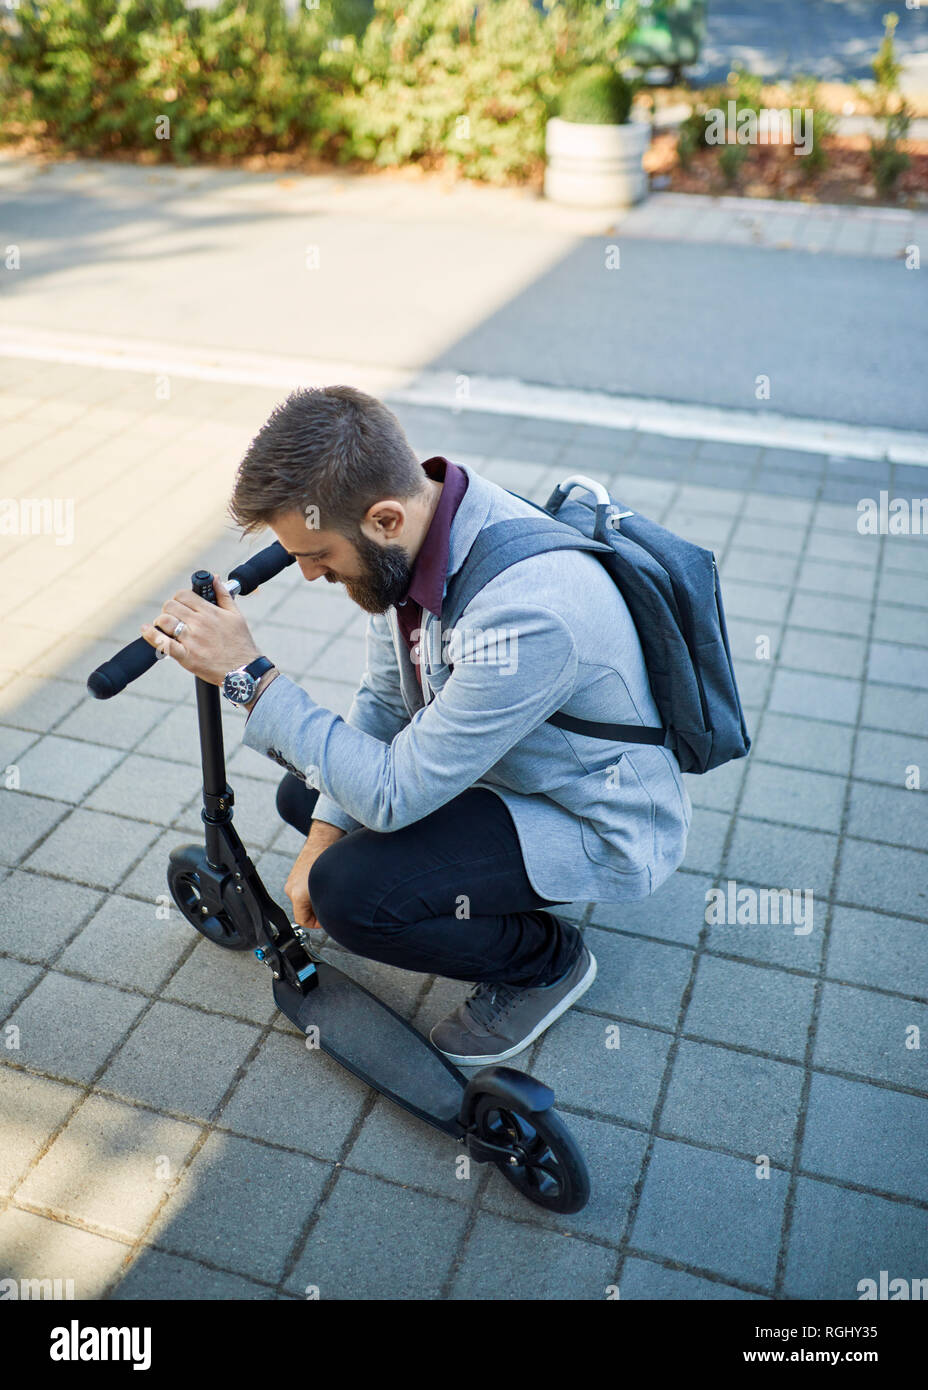 Businessman adjusting scooter Banque D'Images